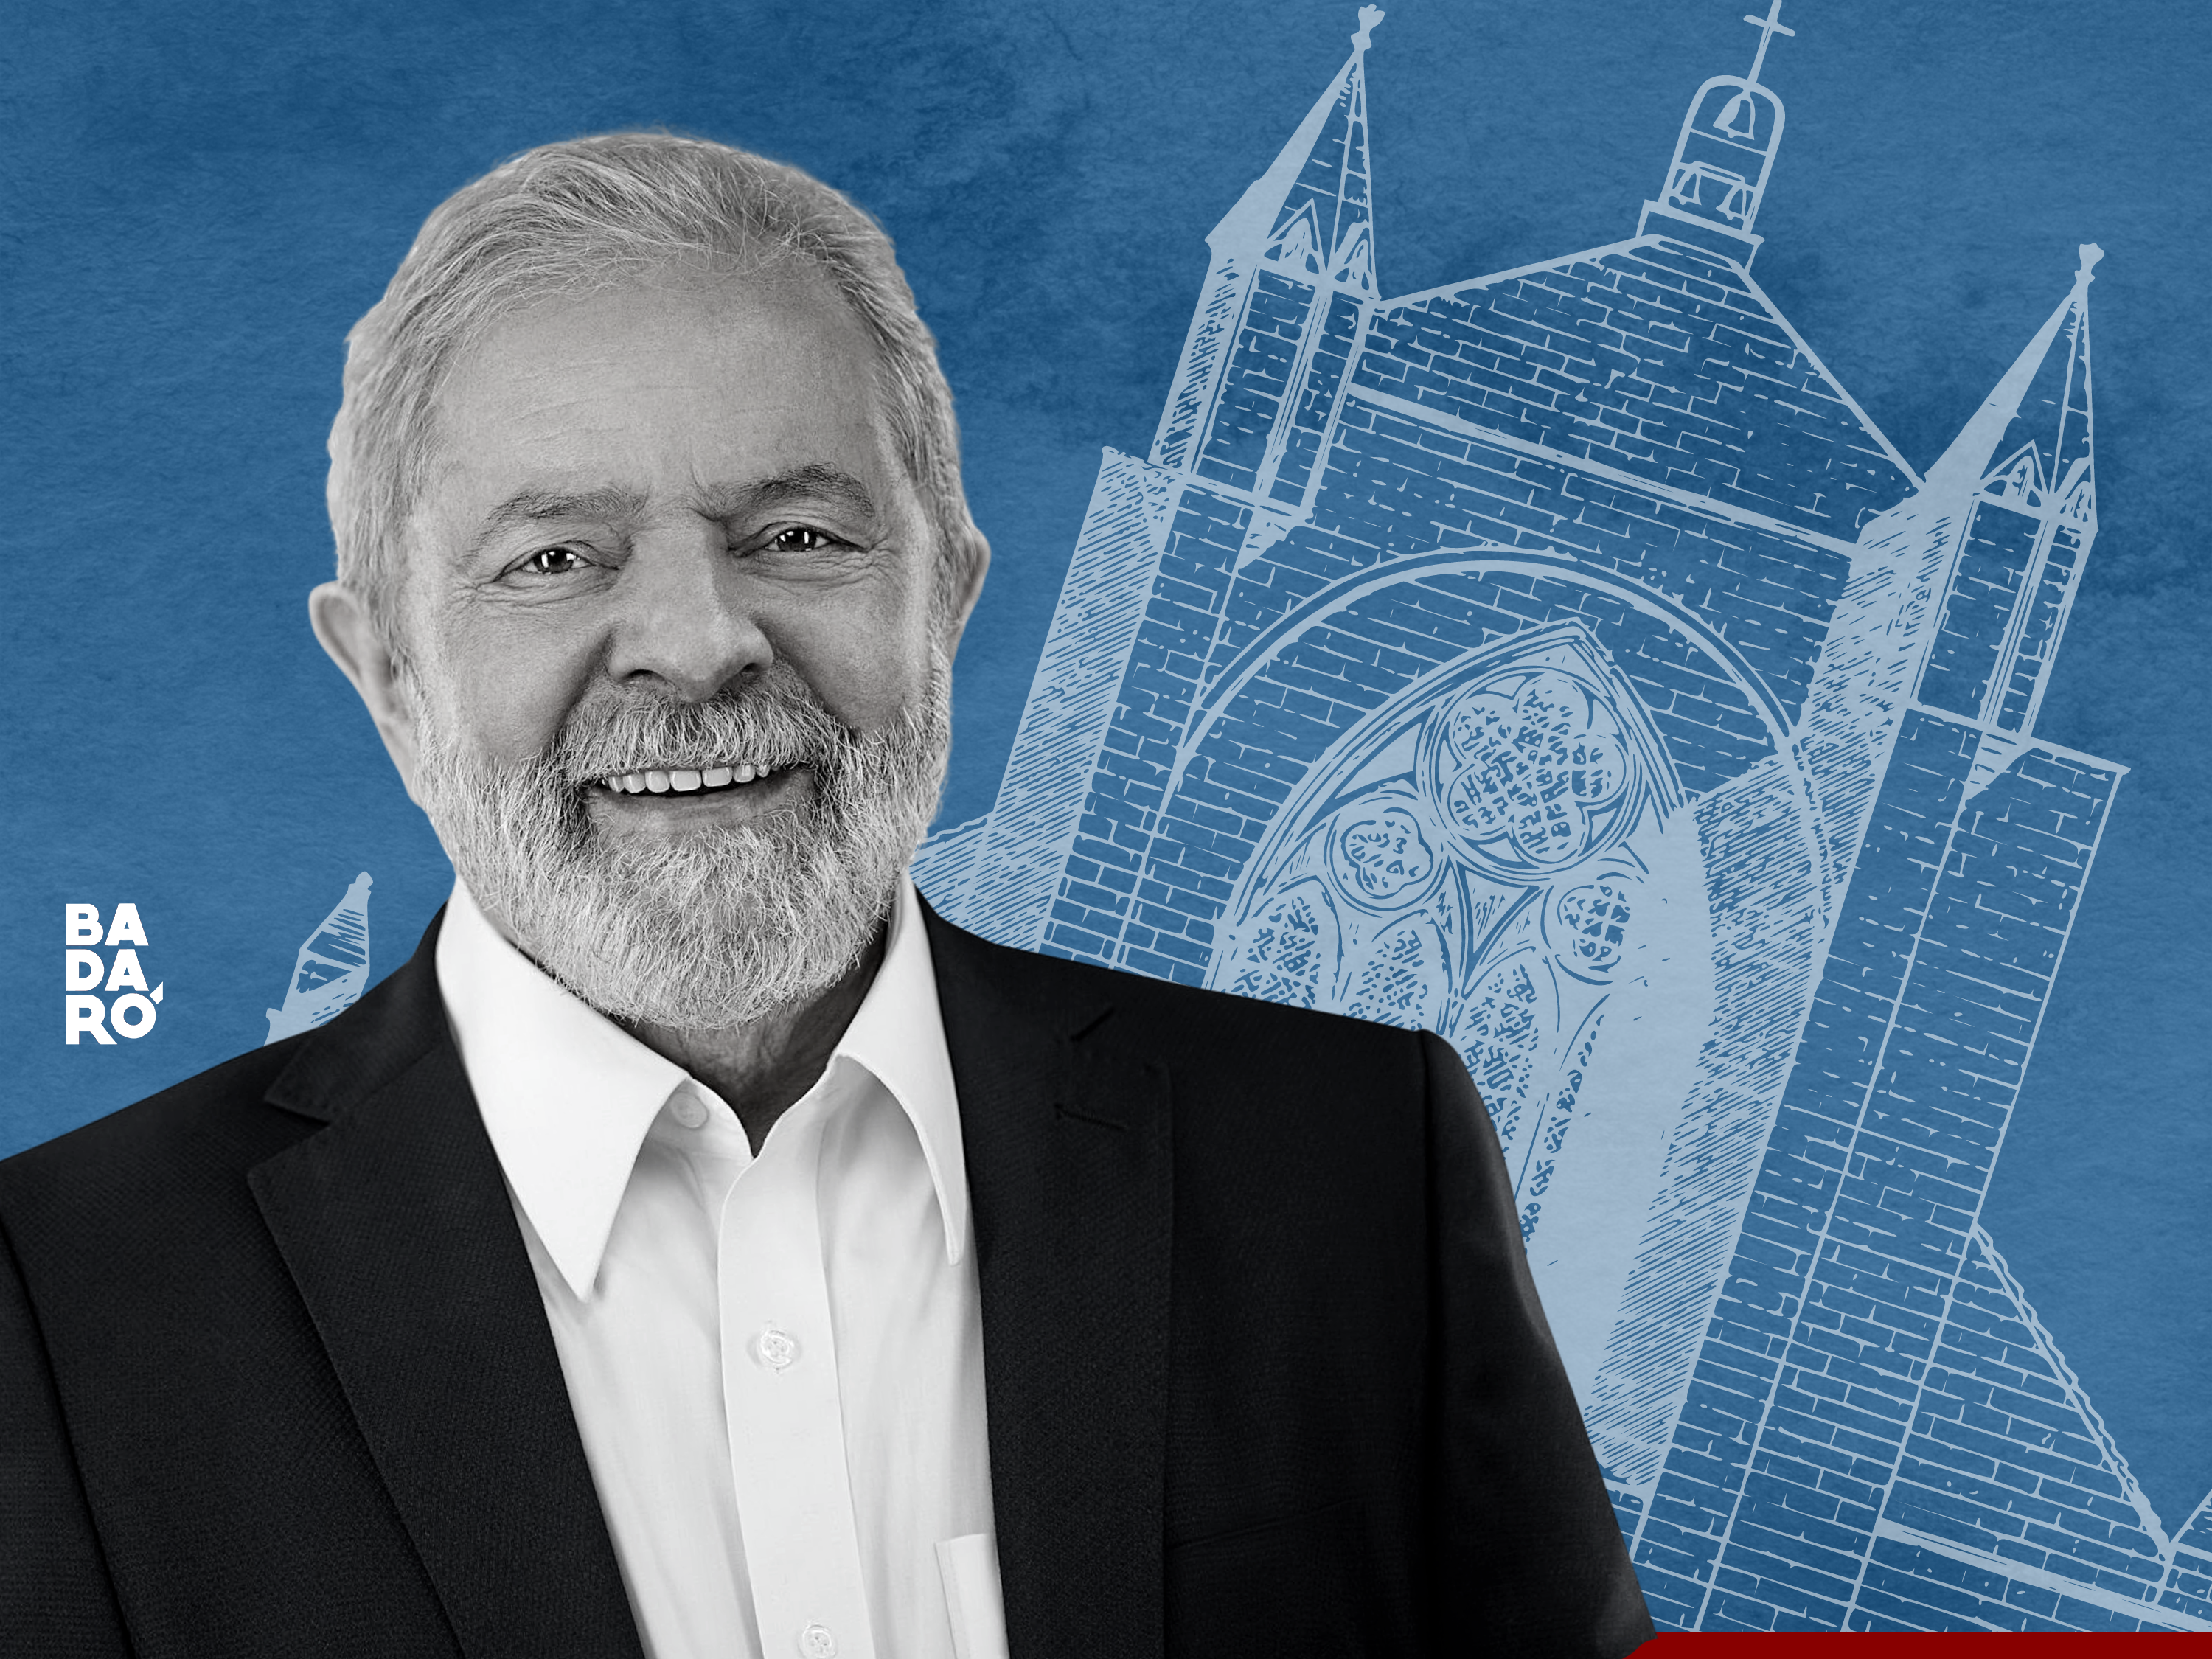 Ao contrário do que dizem fake news, Lula não fechará igrejas